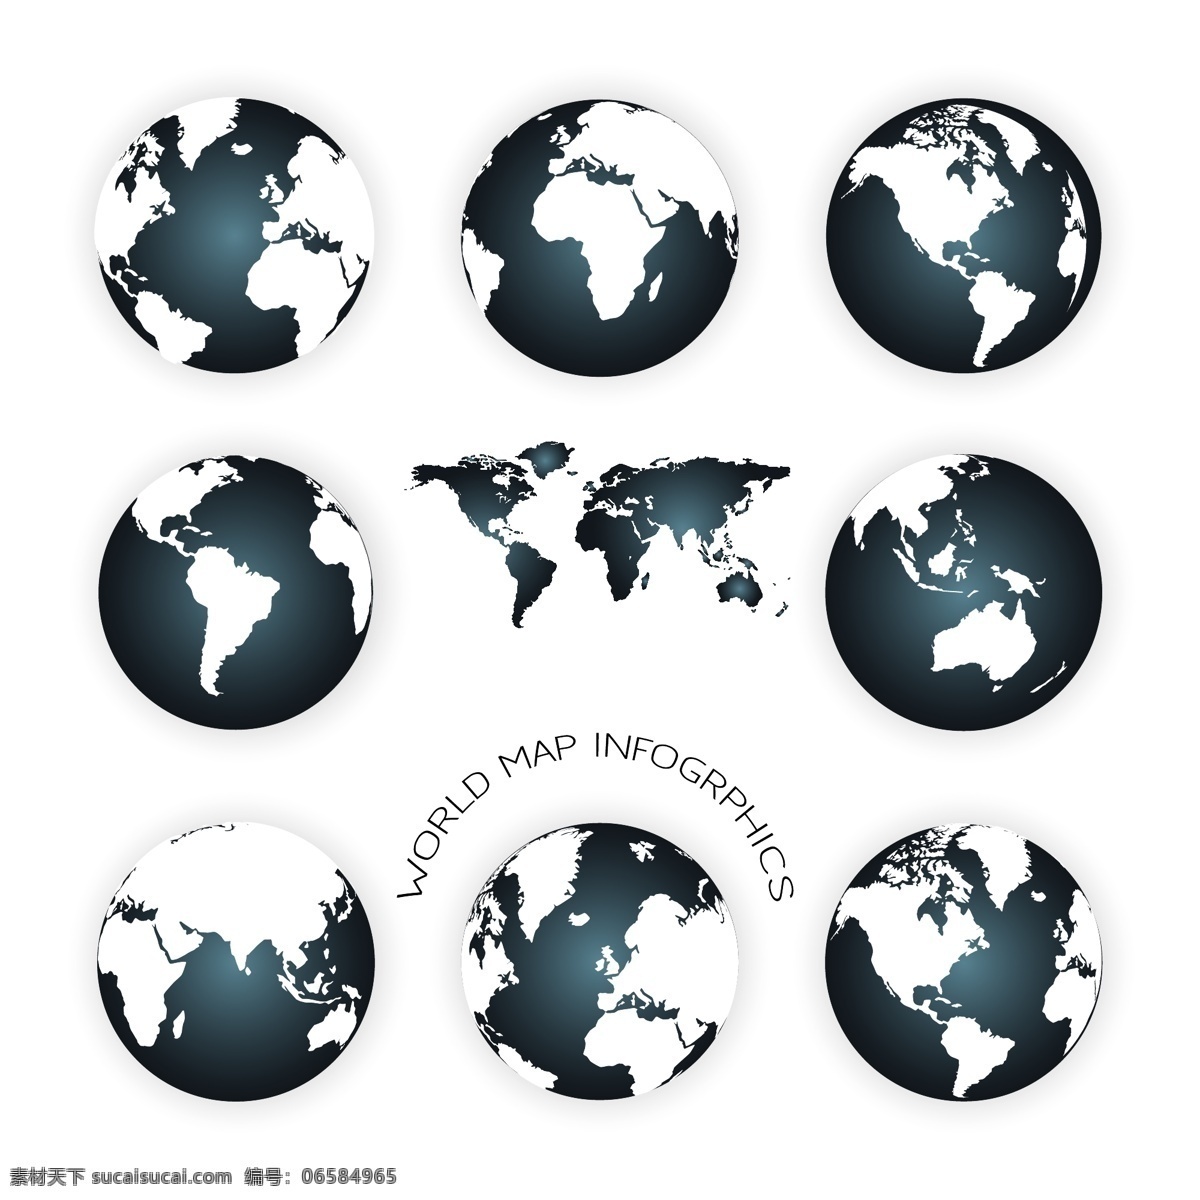 地球星球设计 地球 星球 世界 保护地球 爱护地球 地球图标 科幻 宇宙 地球设计 地球标志 其他图标 标志图标